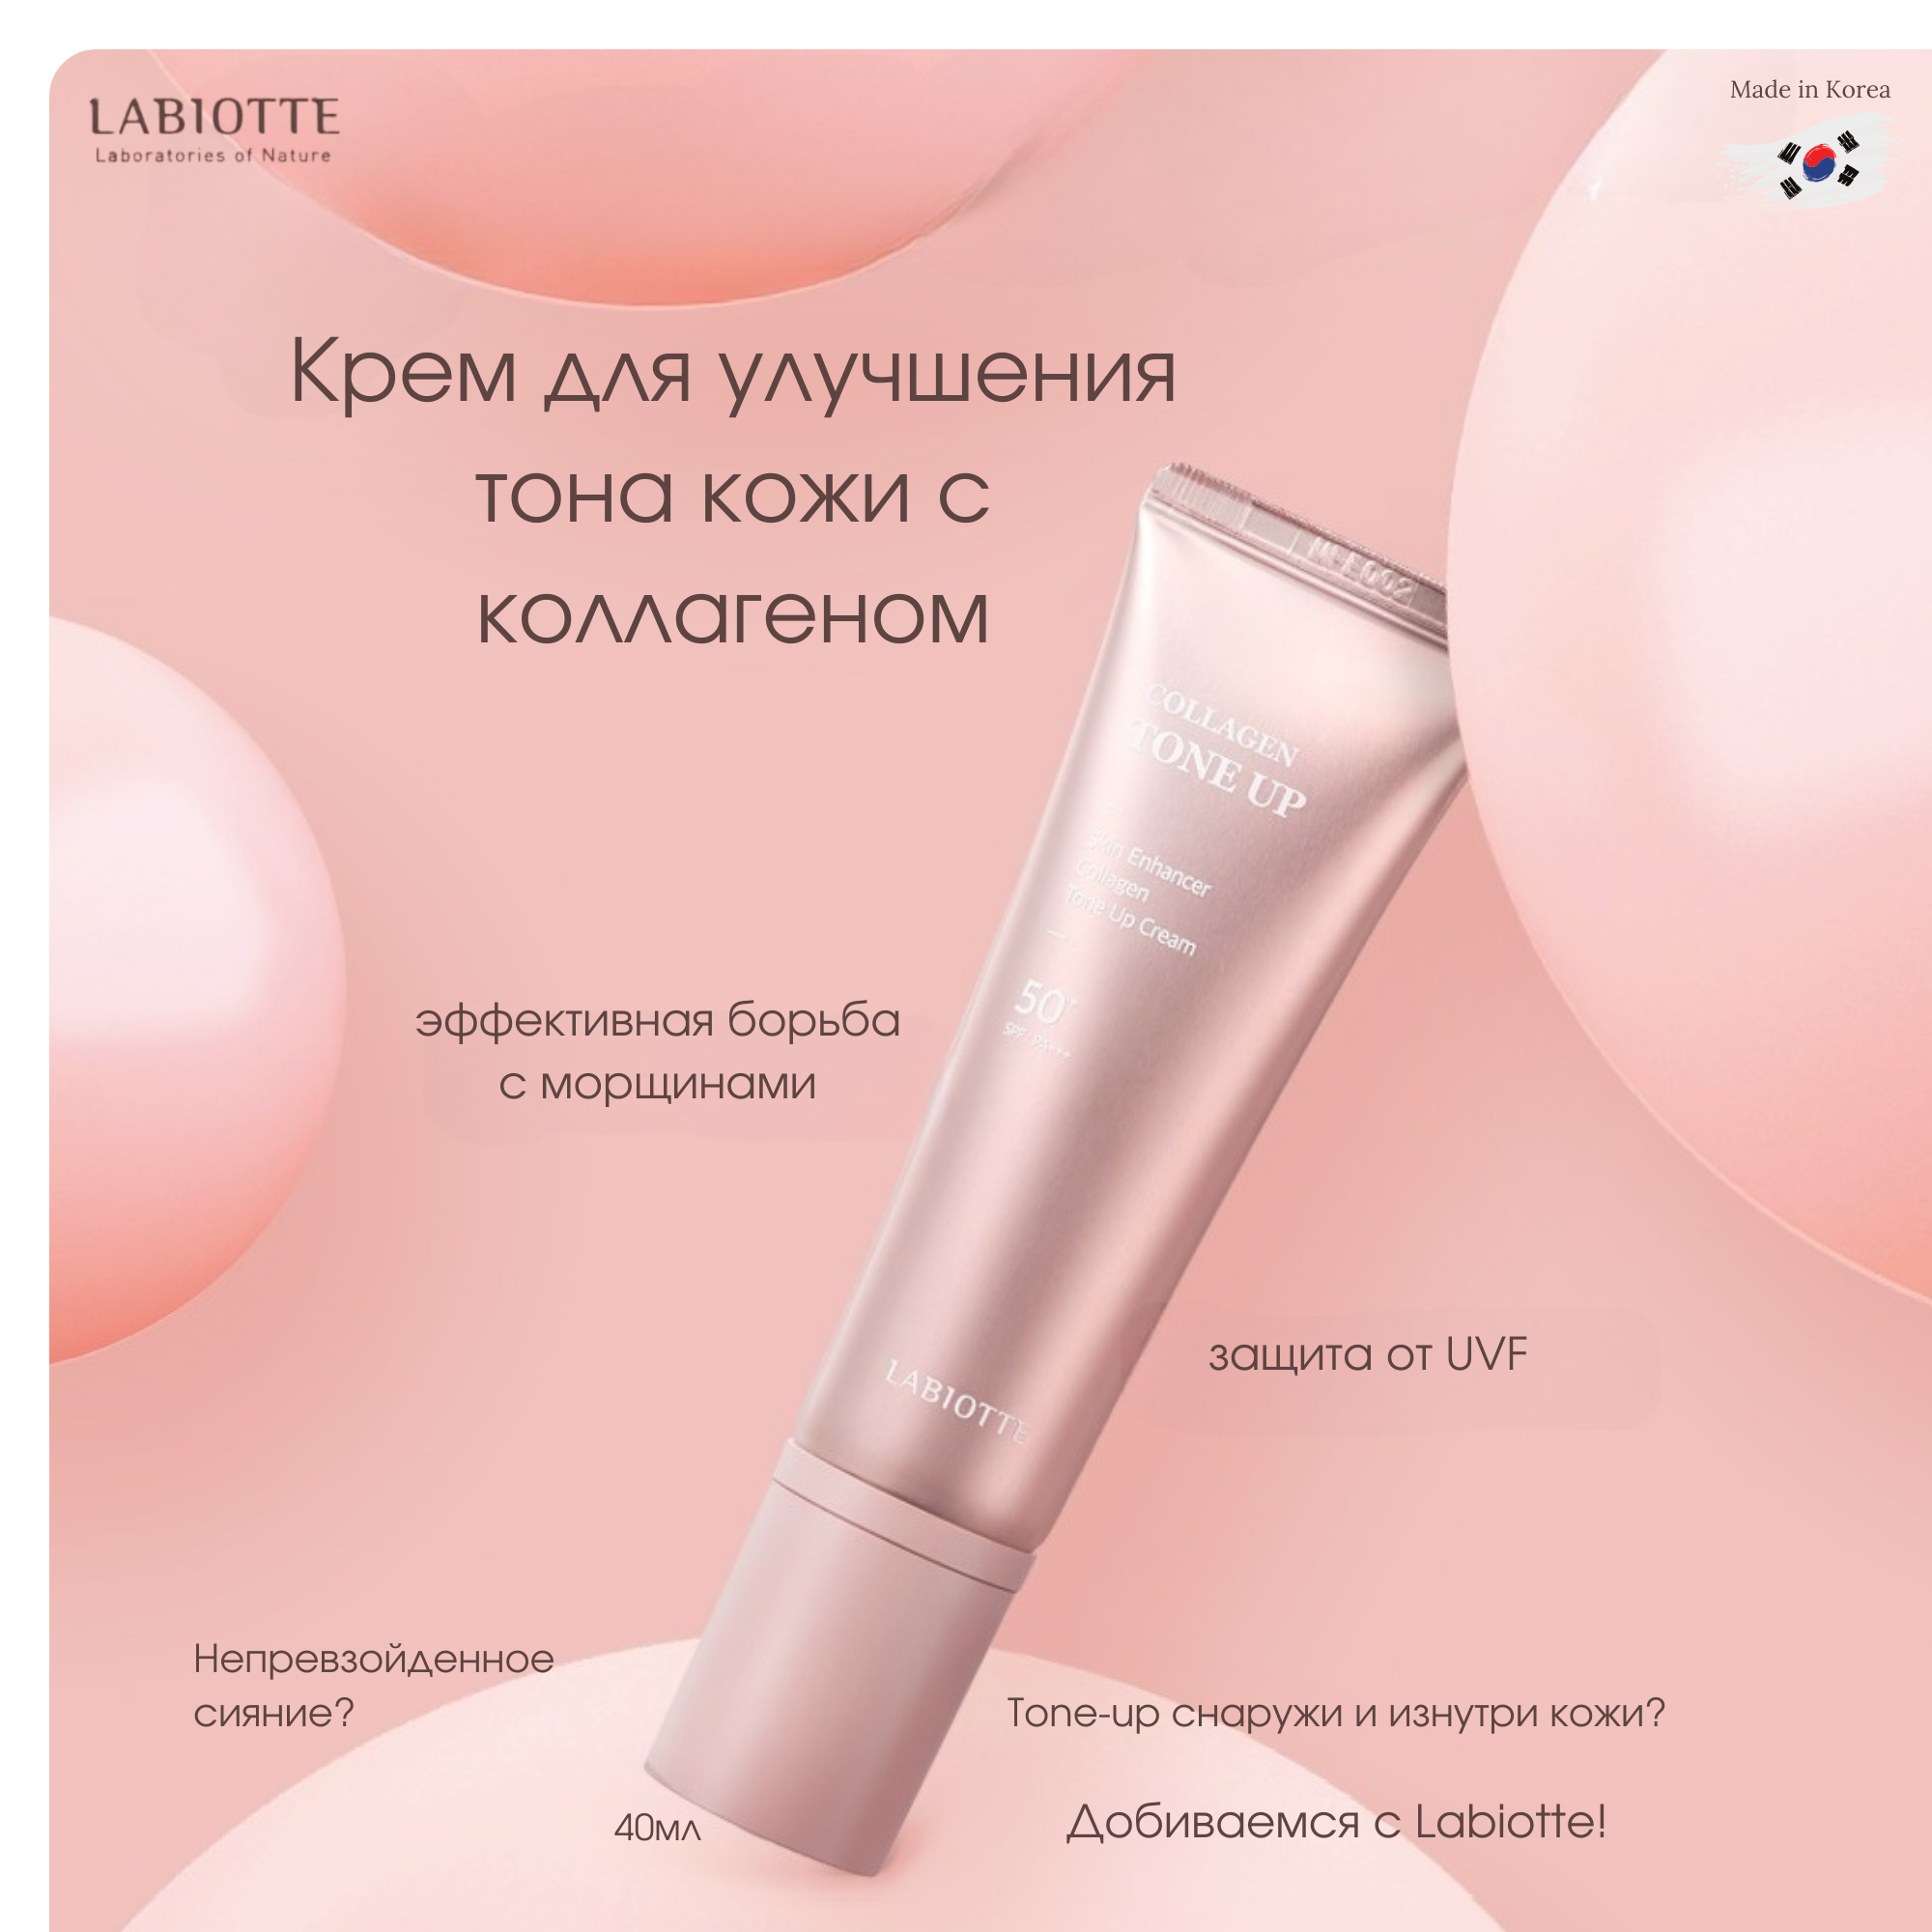 Крем для лица Labiotte для улучшения тона кожи с коллагеном 40мл shiseido массажная маска для улучшения упругости кожи firming massage mask